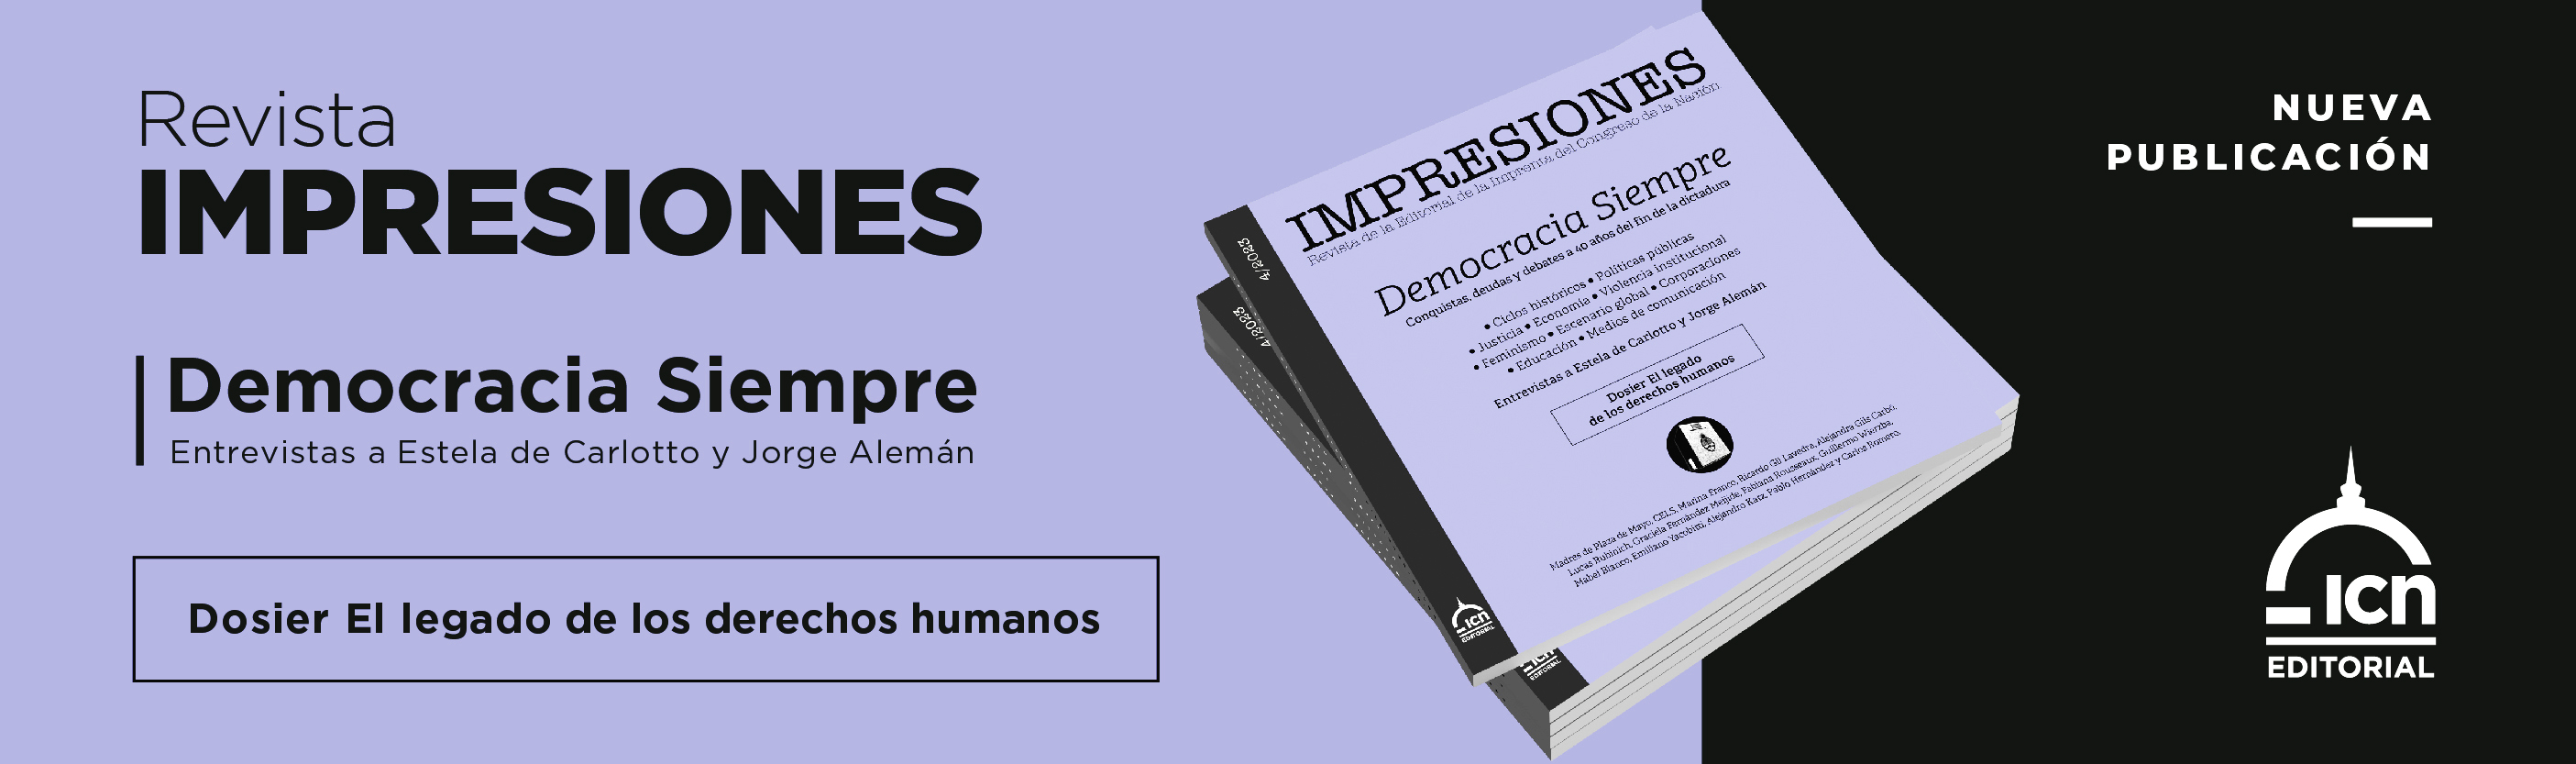 Revista impresiones nª6 - Democracia siempre